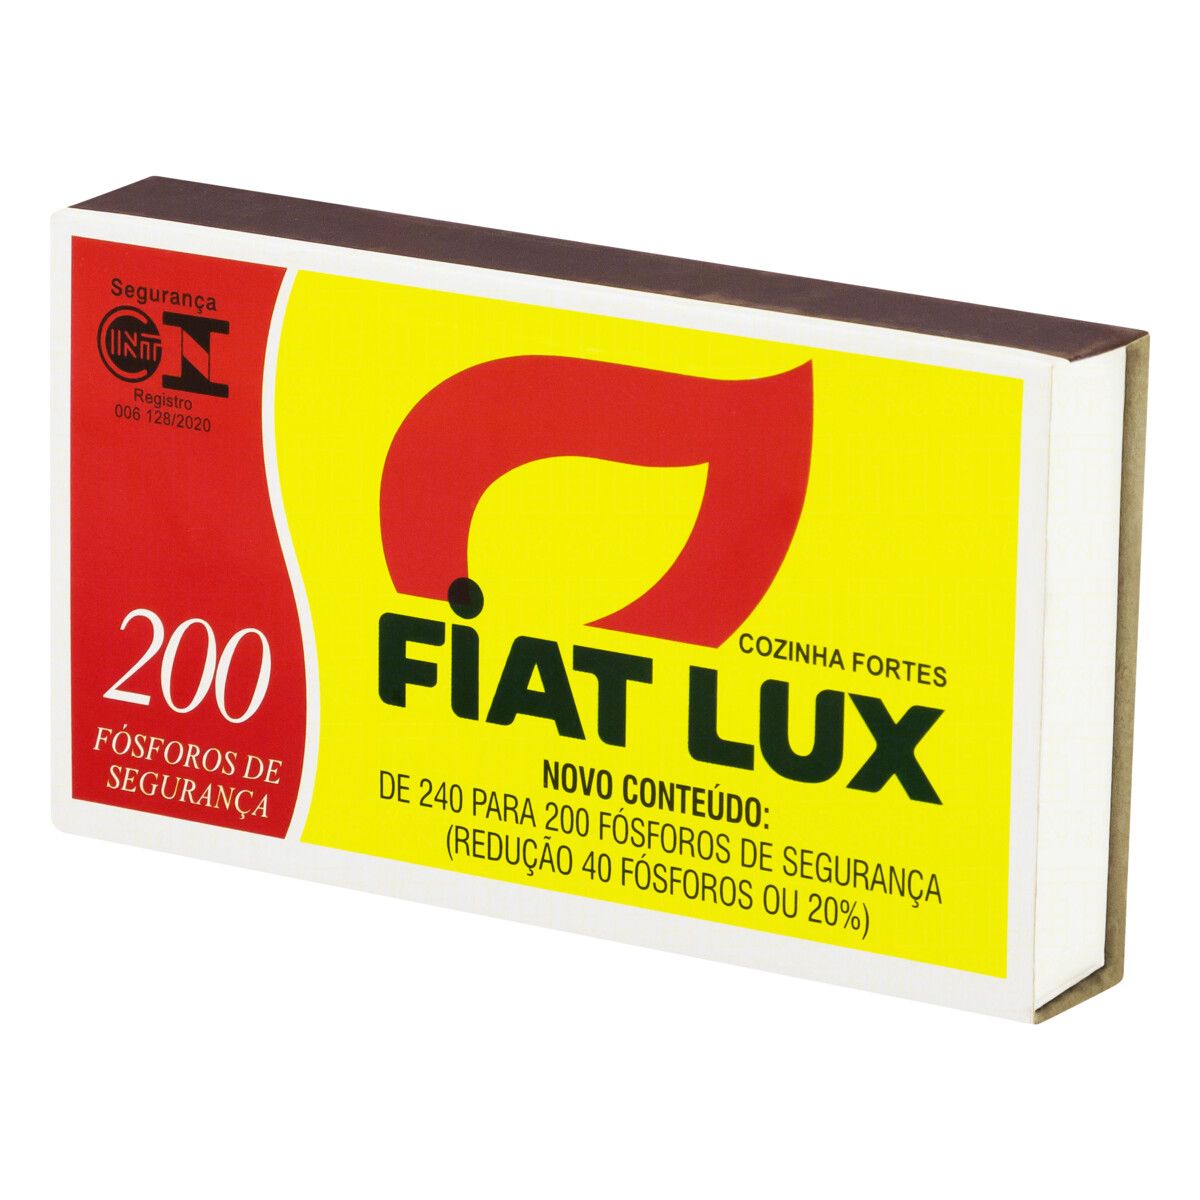 Fósforo de Segurança Fiat Lux Cozinha Fortes 200 Unidades image number 2